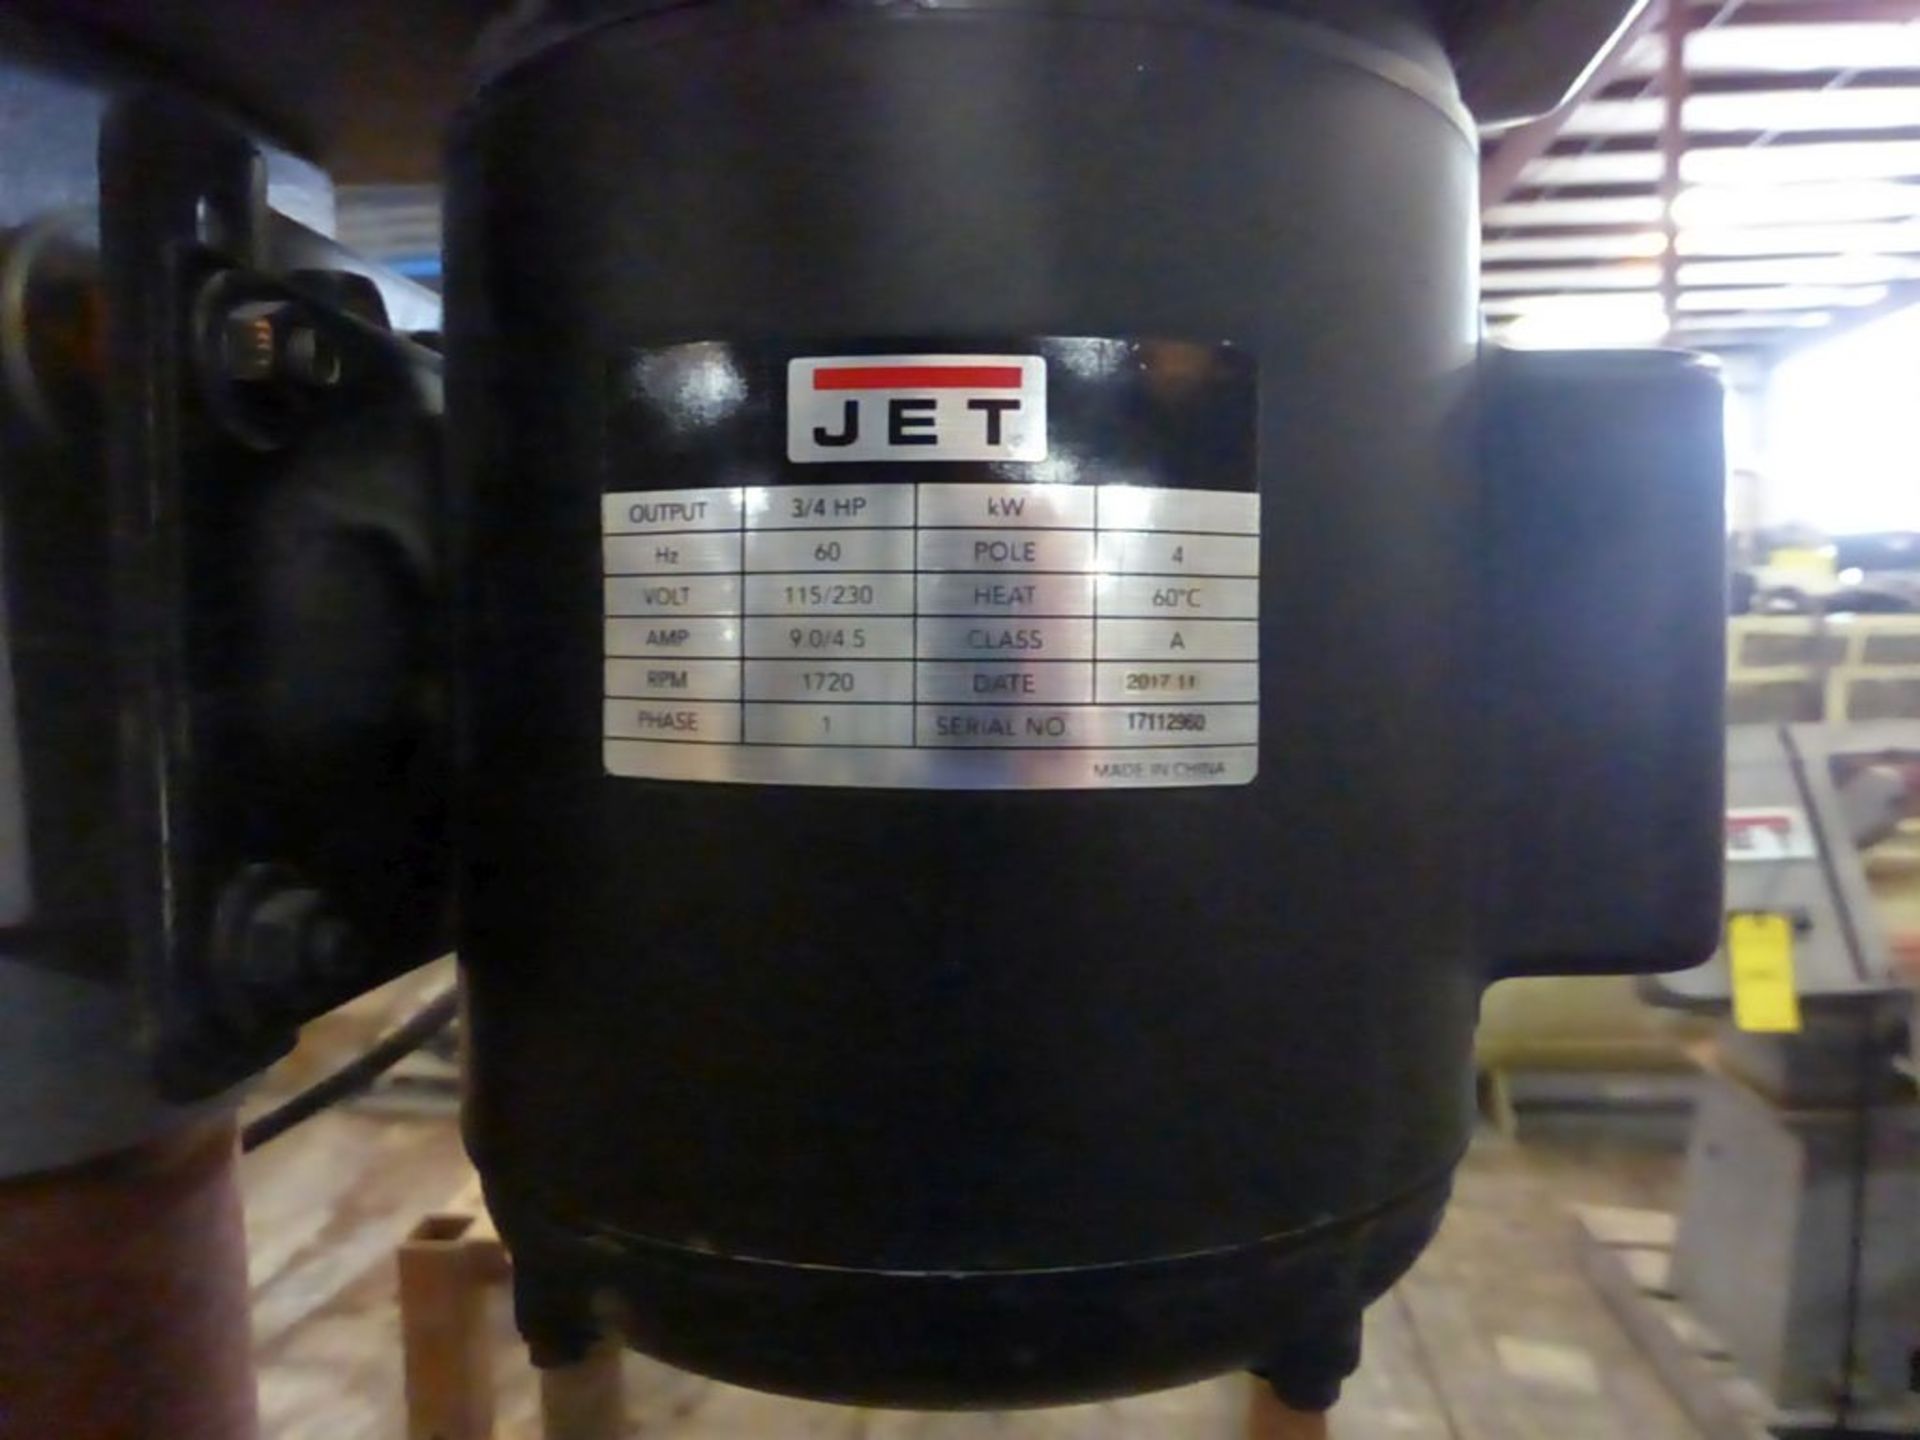 Jet 15" Floor Drill Press | Model No. J-2500; Stock No. 354400; 115/230V; 1PH - Image 4 of 10